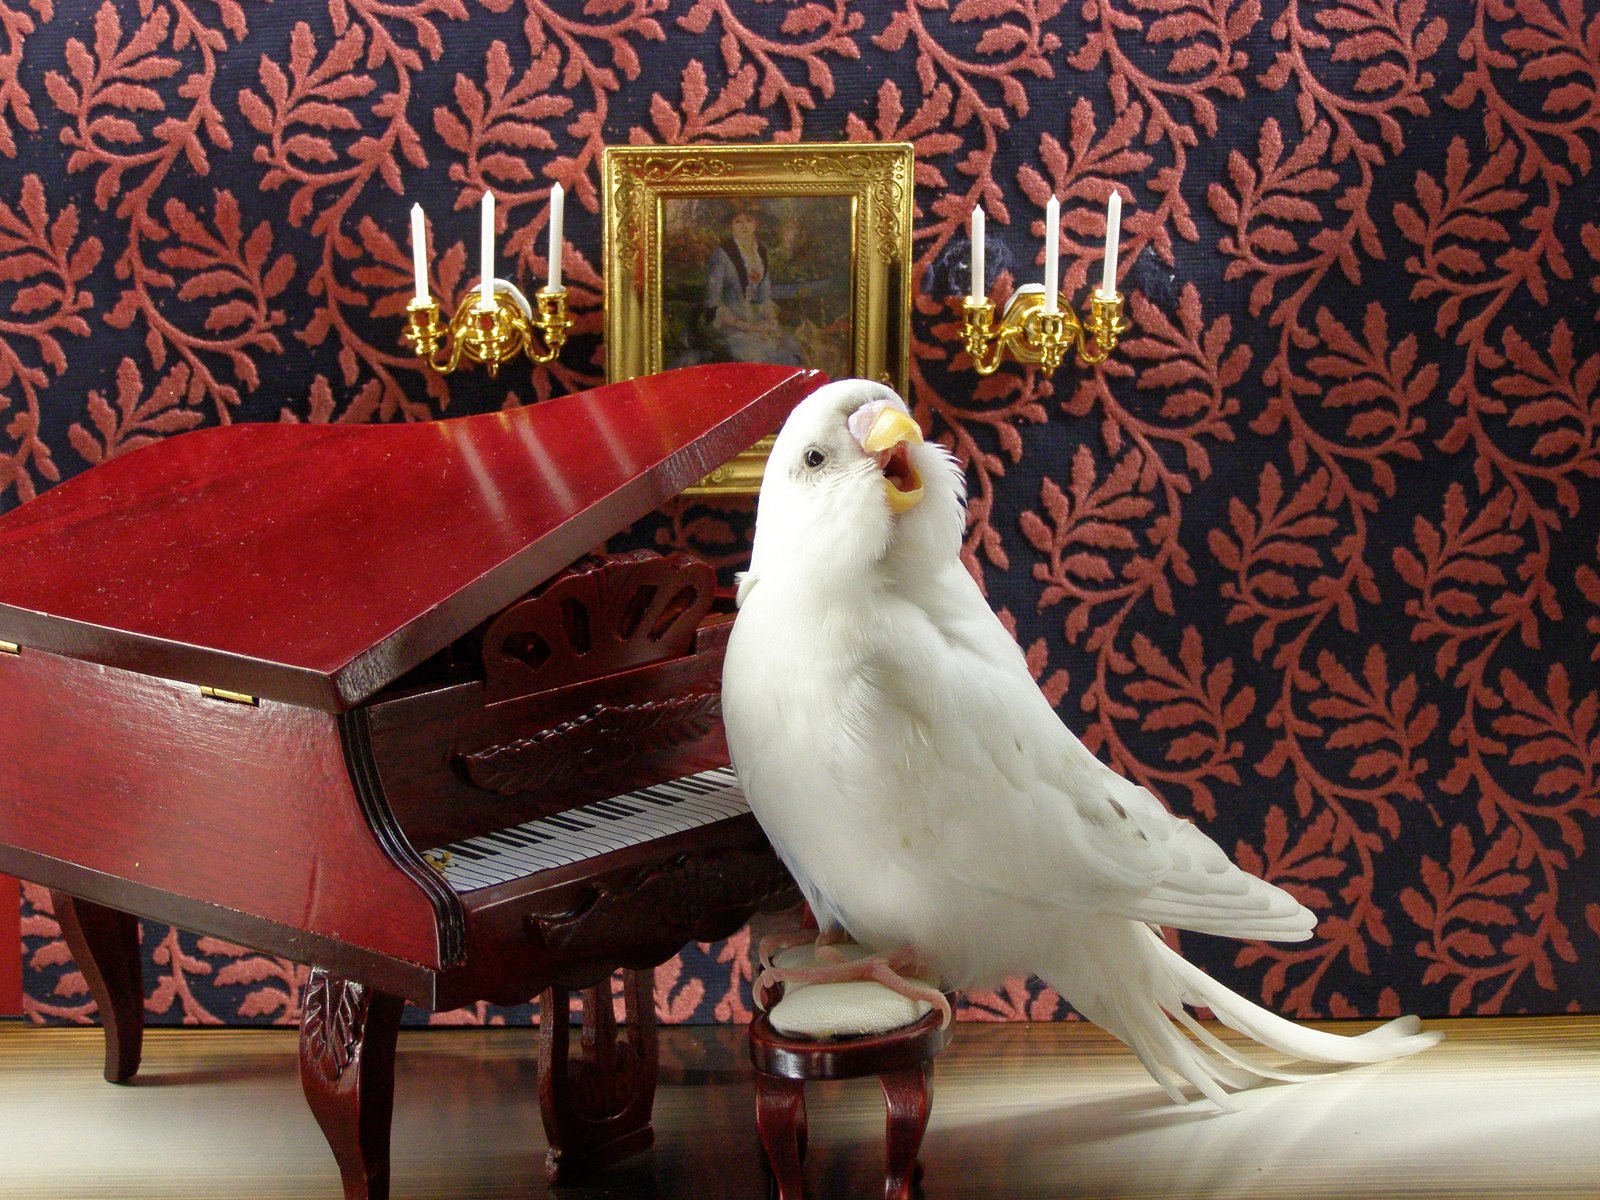 Корелла поет под пианино - смешное видео с попугаем на фортепиано